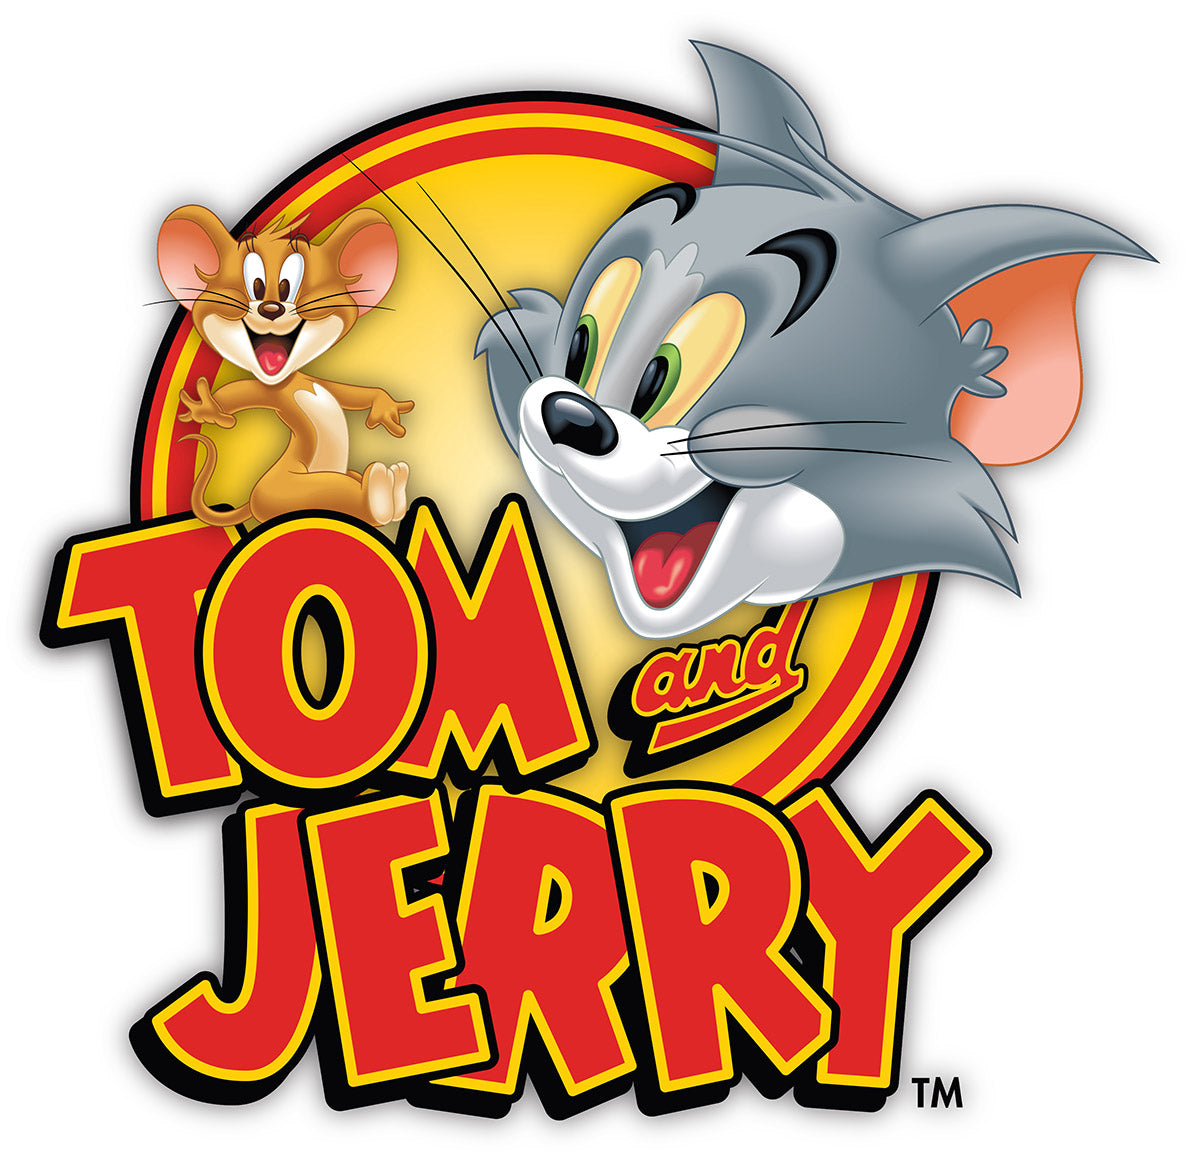 Σετ κουβερλί μονό Art 6194 Tom and Jerry 160x240 Εμπριμέ Beauty Home από την εταιρεία Beauty Home